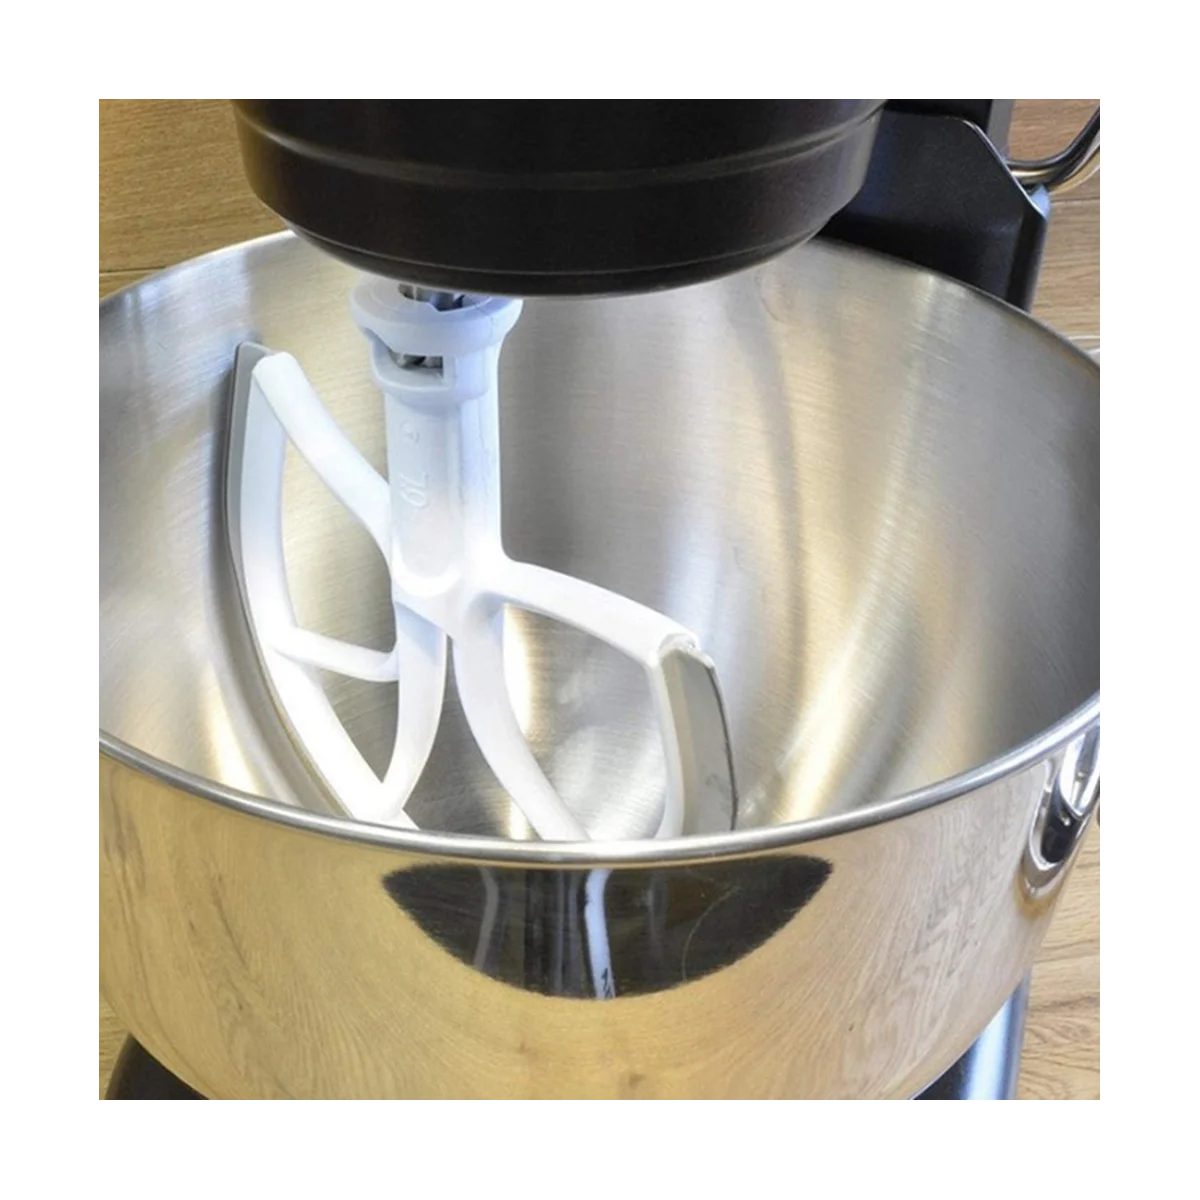 Венчик с гибким краем Плоская лопатка для взбивания с силиконовыми краями Запасные части для миксера KitchenAid 6QT с подъемной подставкой для чаши Изображение 5